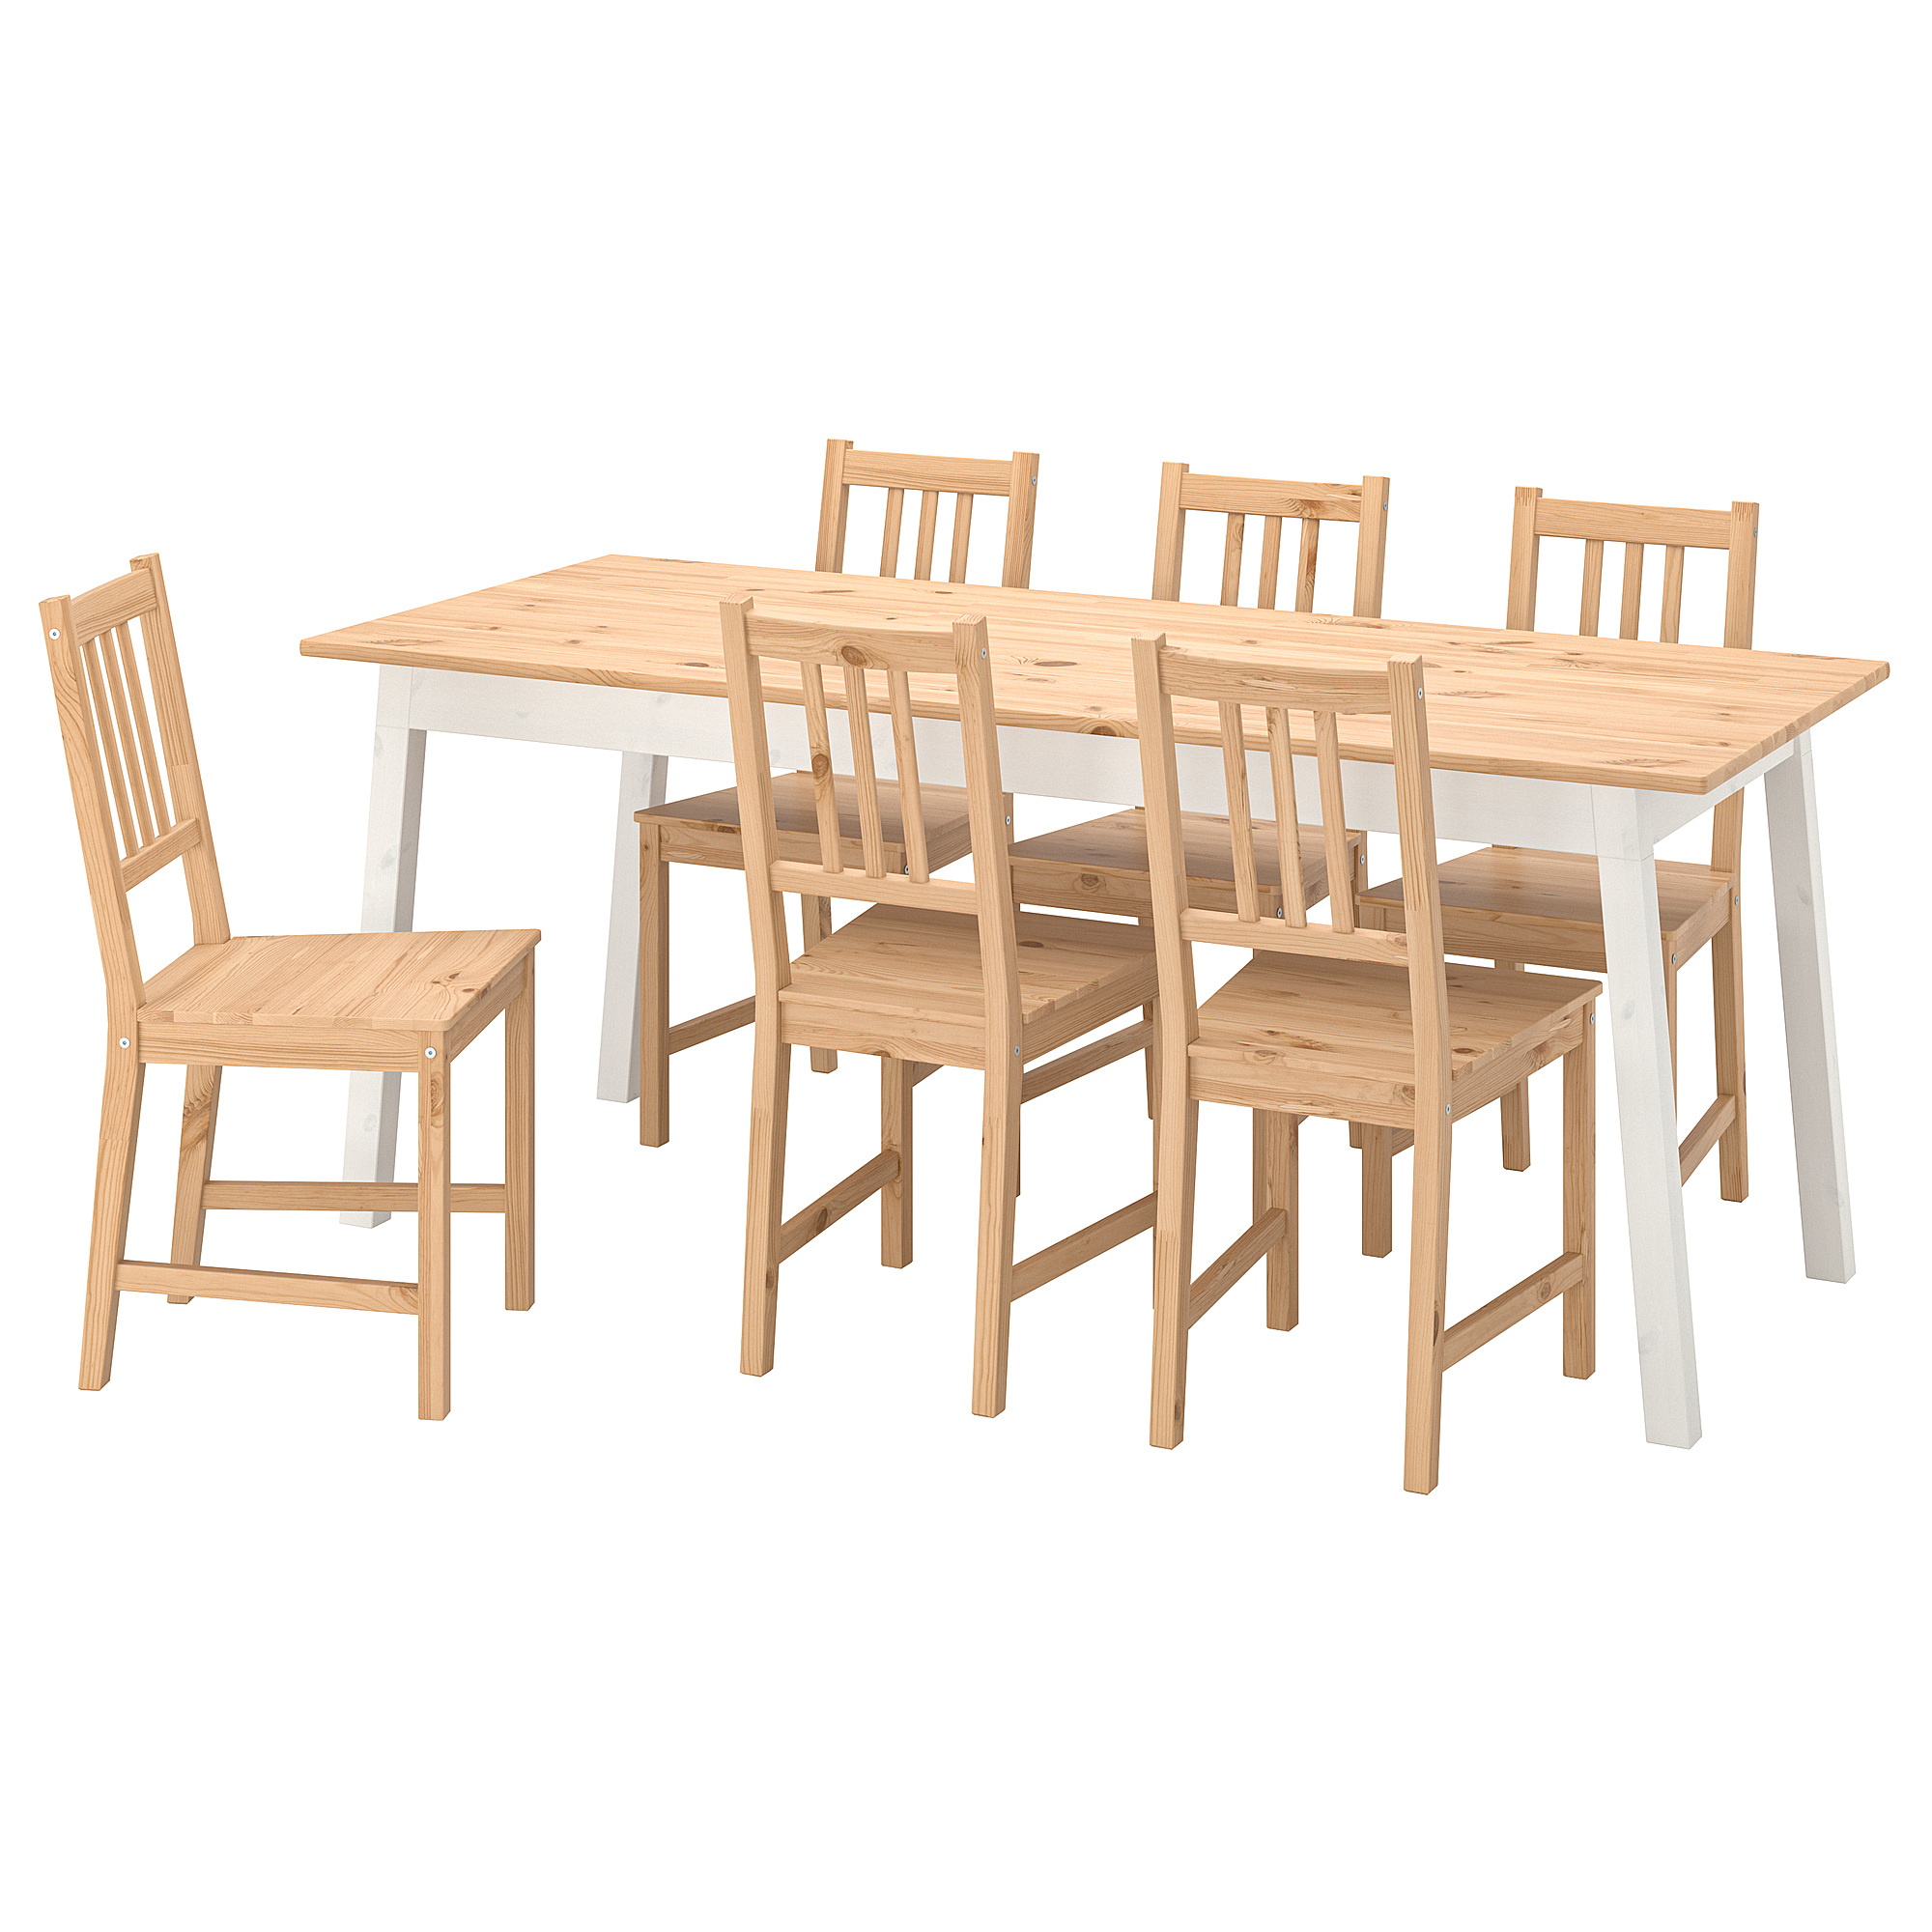 PINNTORP/PINNTORP 餐桌附6張餐椅